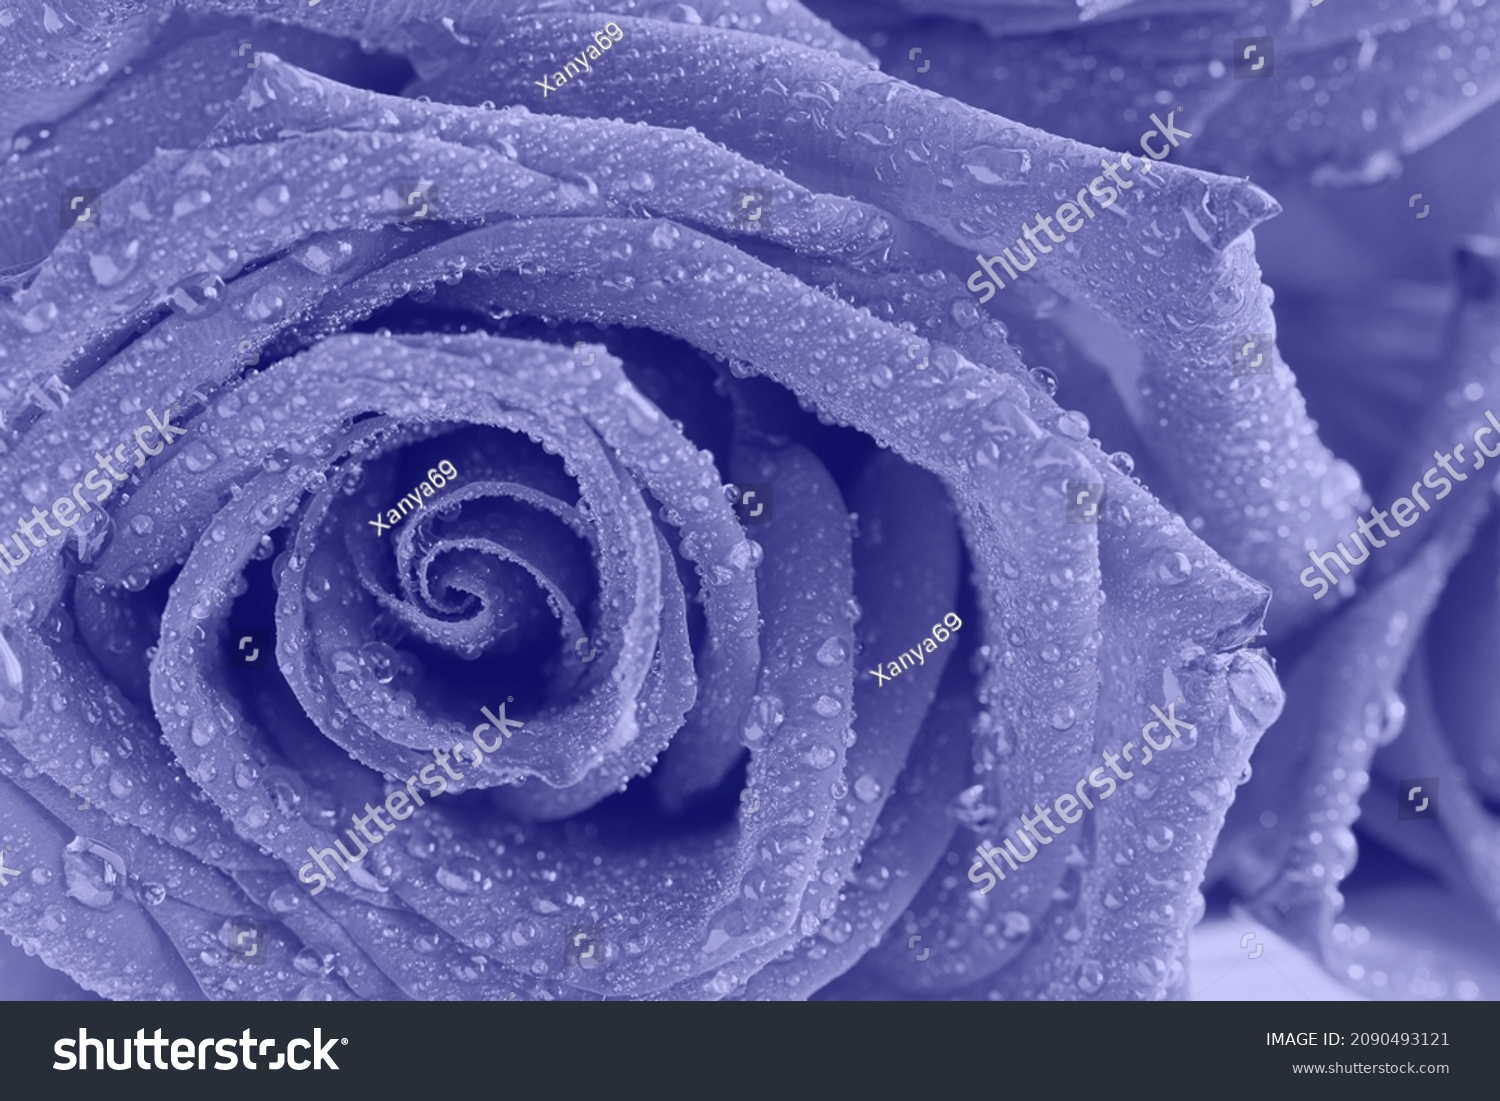 Foto Stok Very Peri Violet Rose Water Drops (Edit Sekarang) 2090493121.